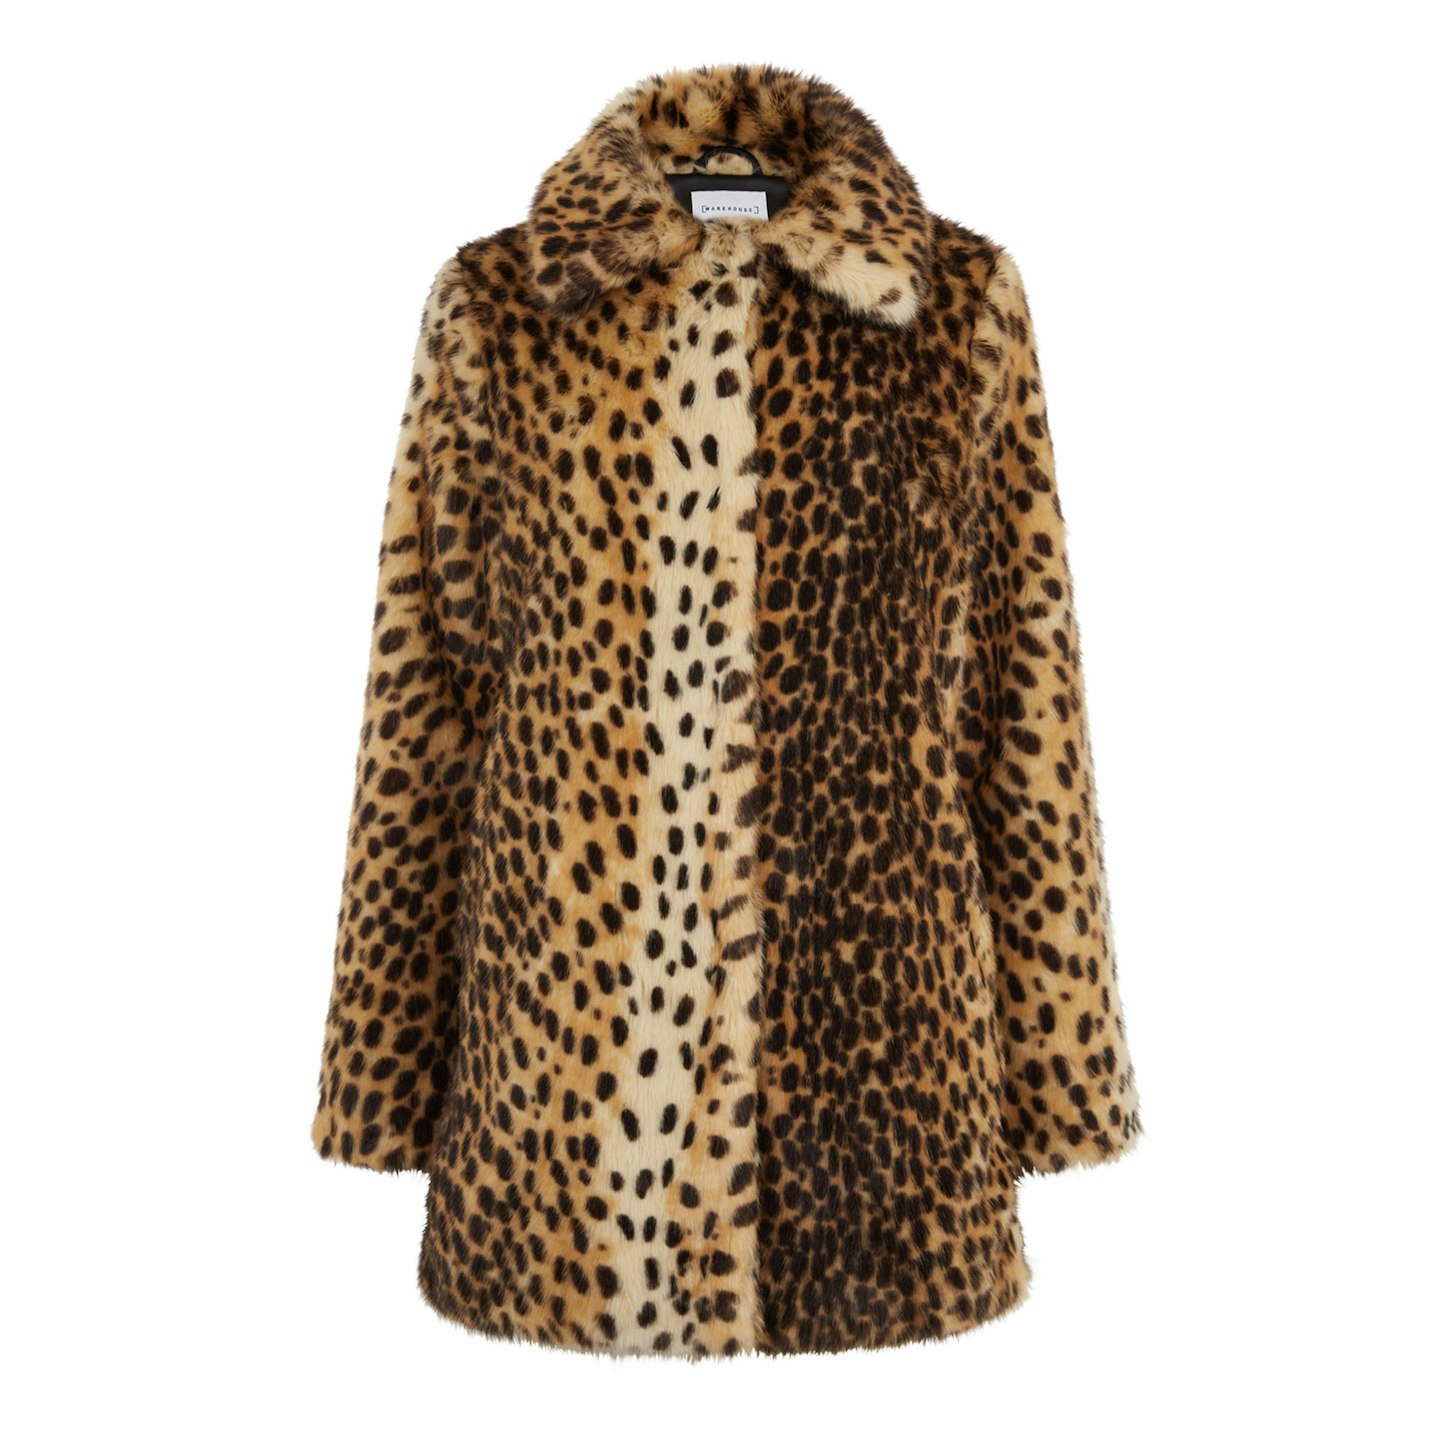 Warehouse, Leopard Faux Fur Coat, £89